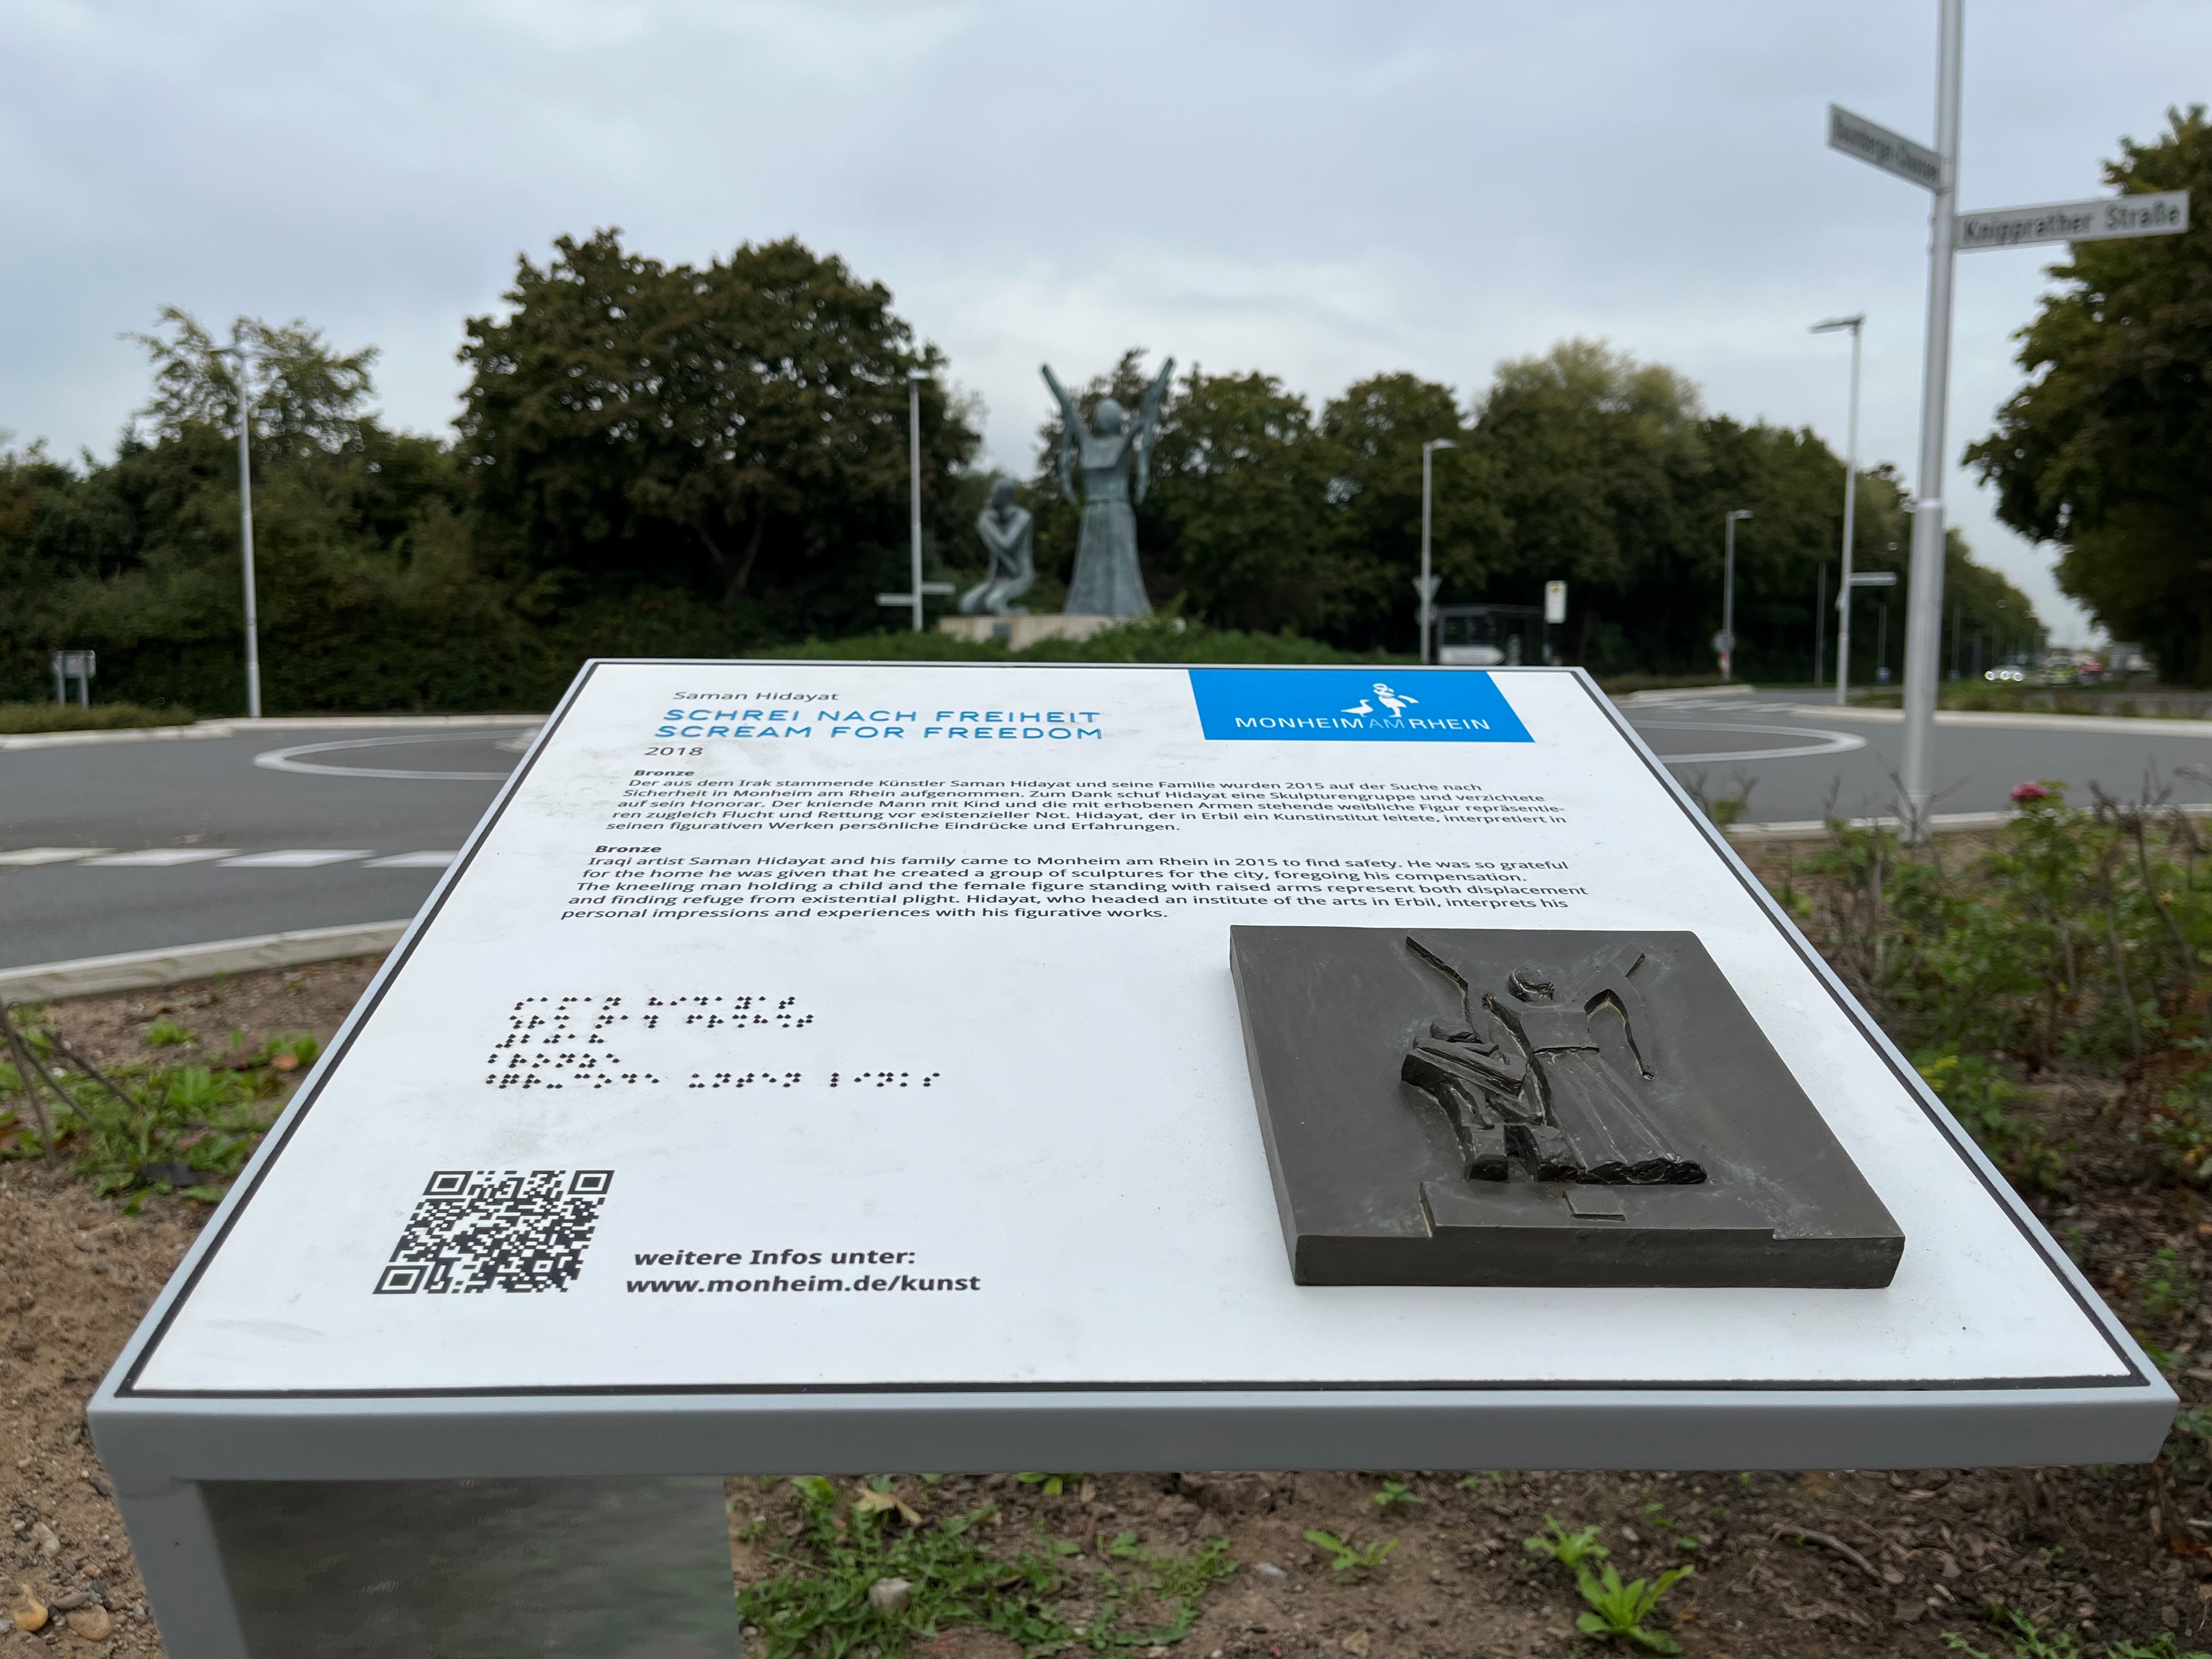 Barrierefrei zugängliche Infostelle an den Kunstwerken im öffentlichen Raum.